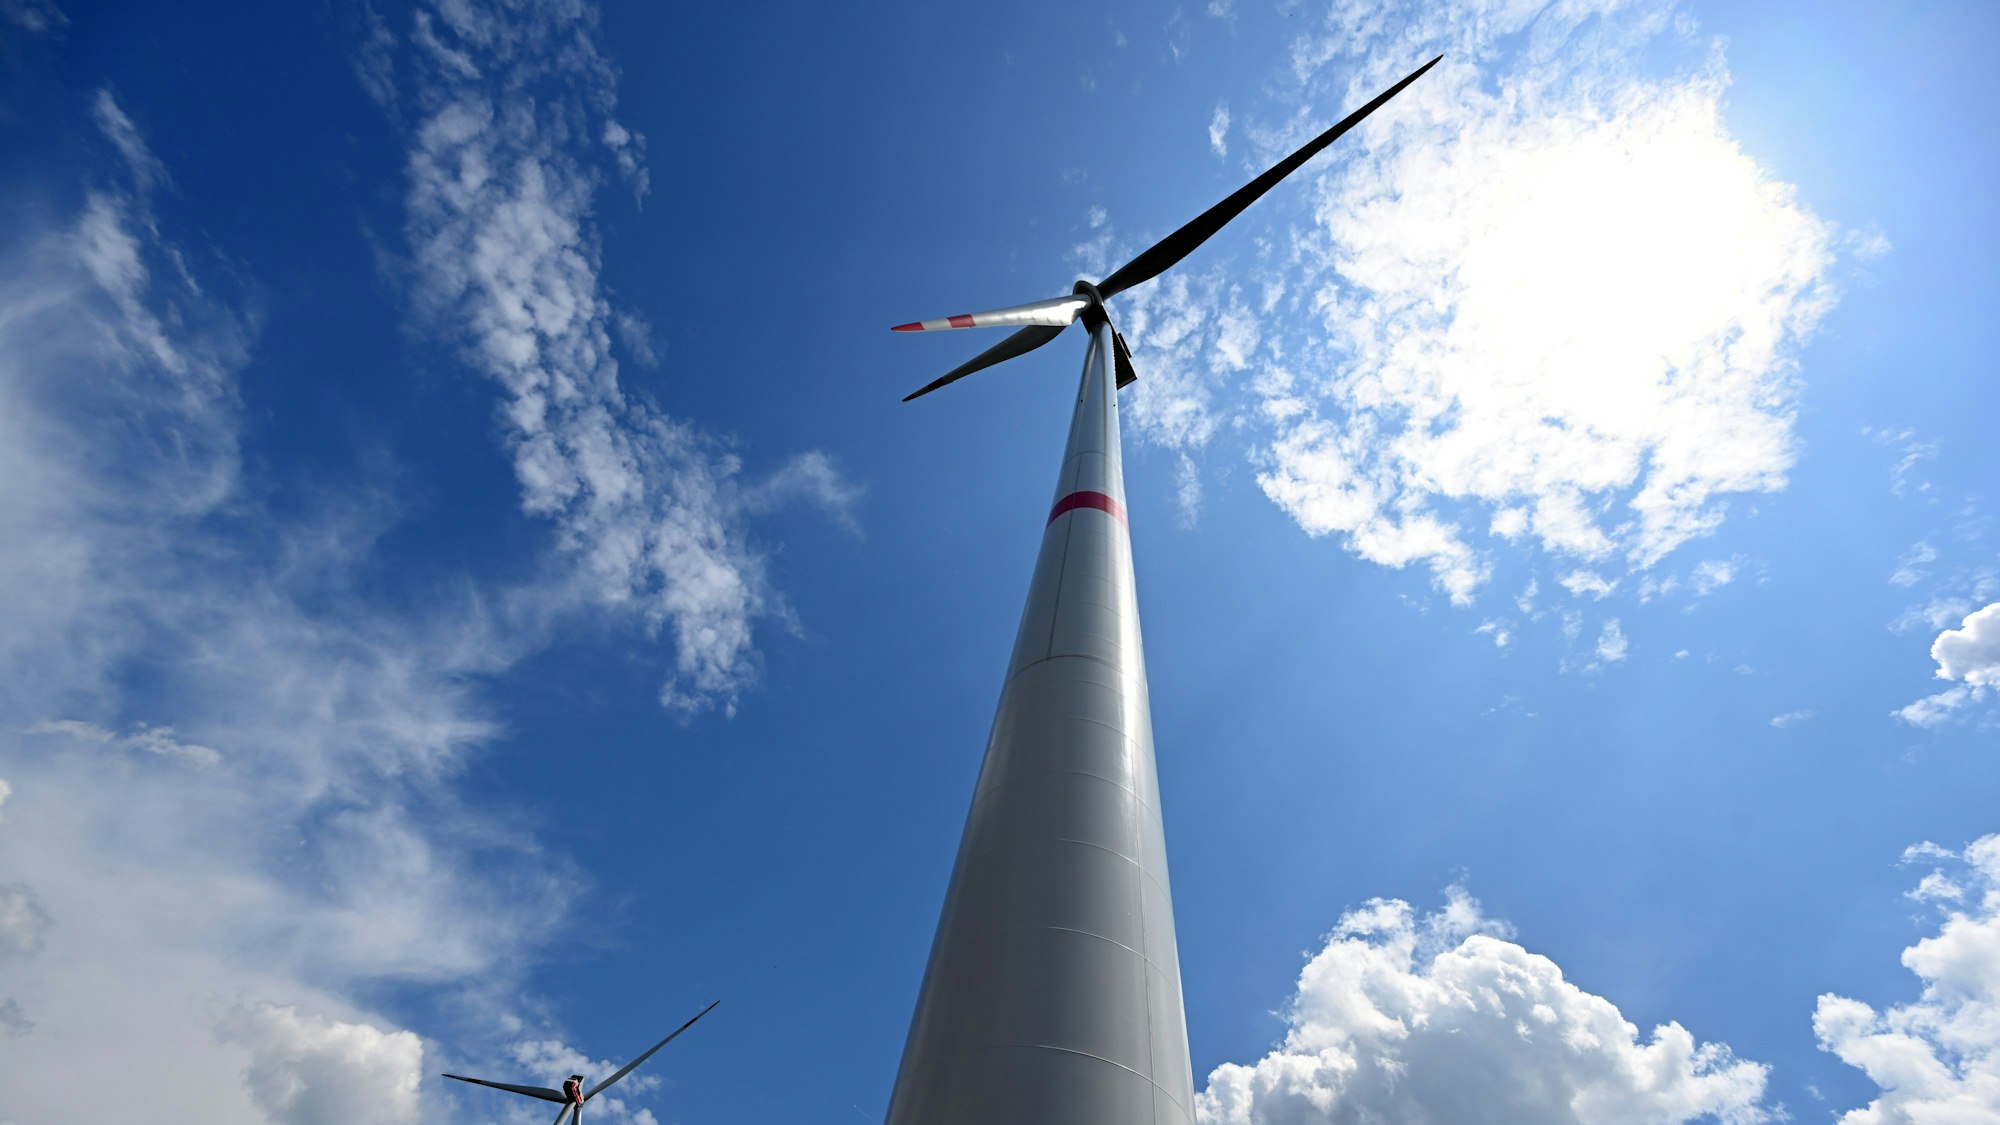 Wolken ziehen über Windräder zur Stromerzeugung. Die Wittgenstein Gruppe sowie der Landesverband Erneuerbare Energien NRW nehmen den seit Herbst 2022 bestehenden Wald-Windpark Arfeld mit vier Windrädern offiziell in Betrieb.